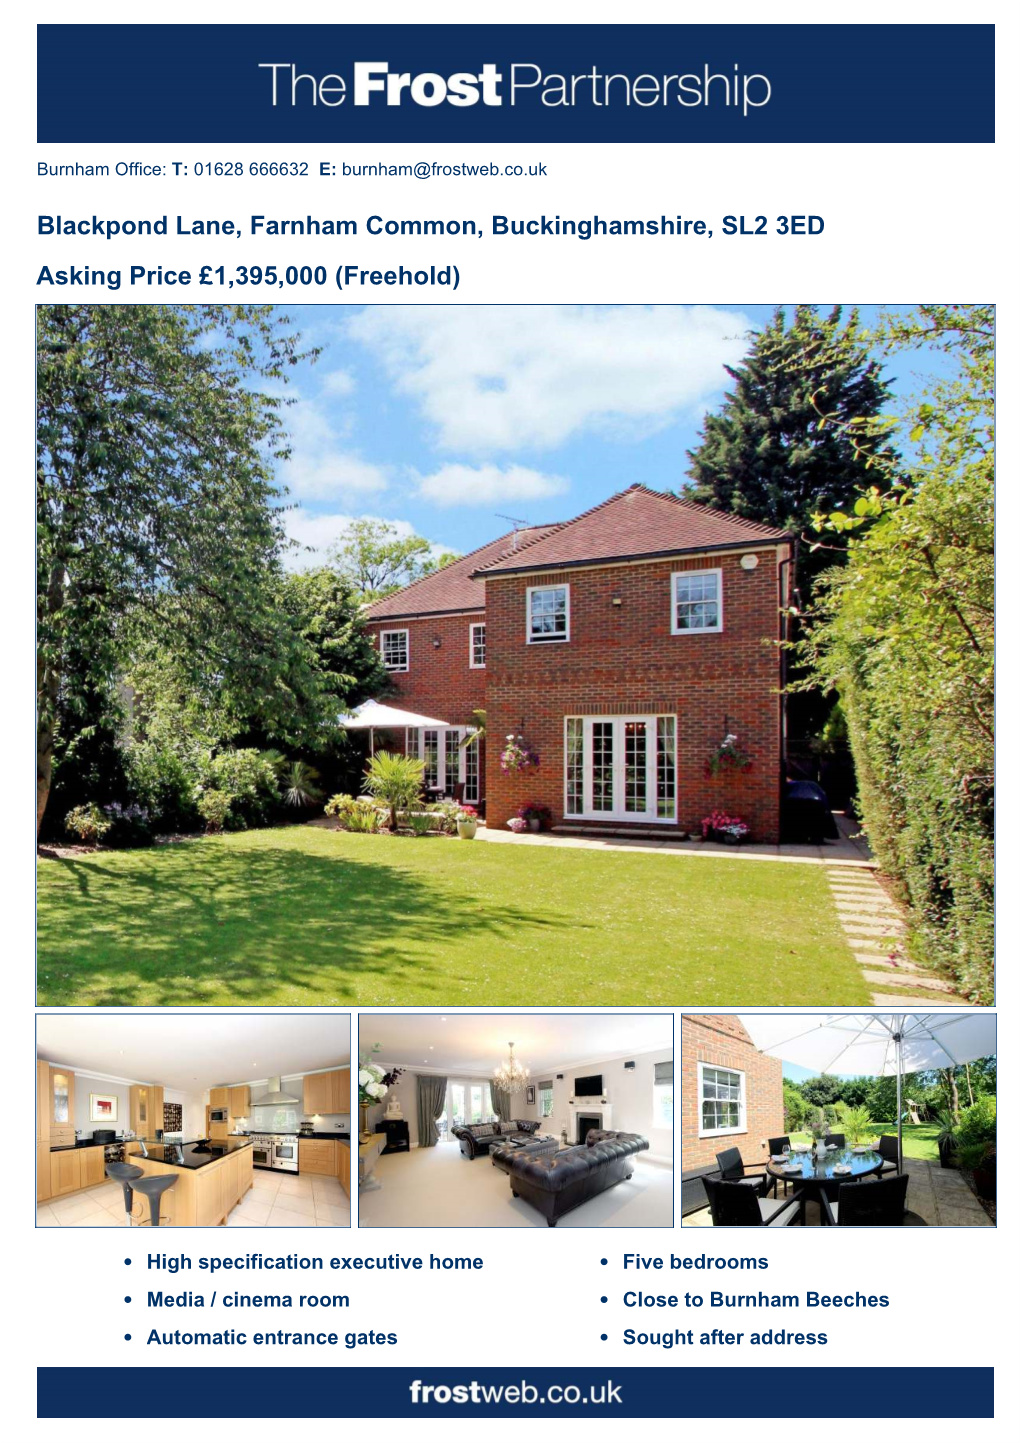 Blackpond Lane, Farnham Common, Buckinghamshire, SL2 3ED Asking Price £1,395,000 (Freehold)